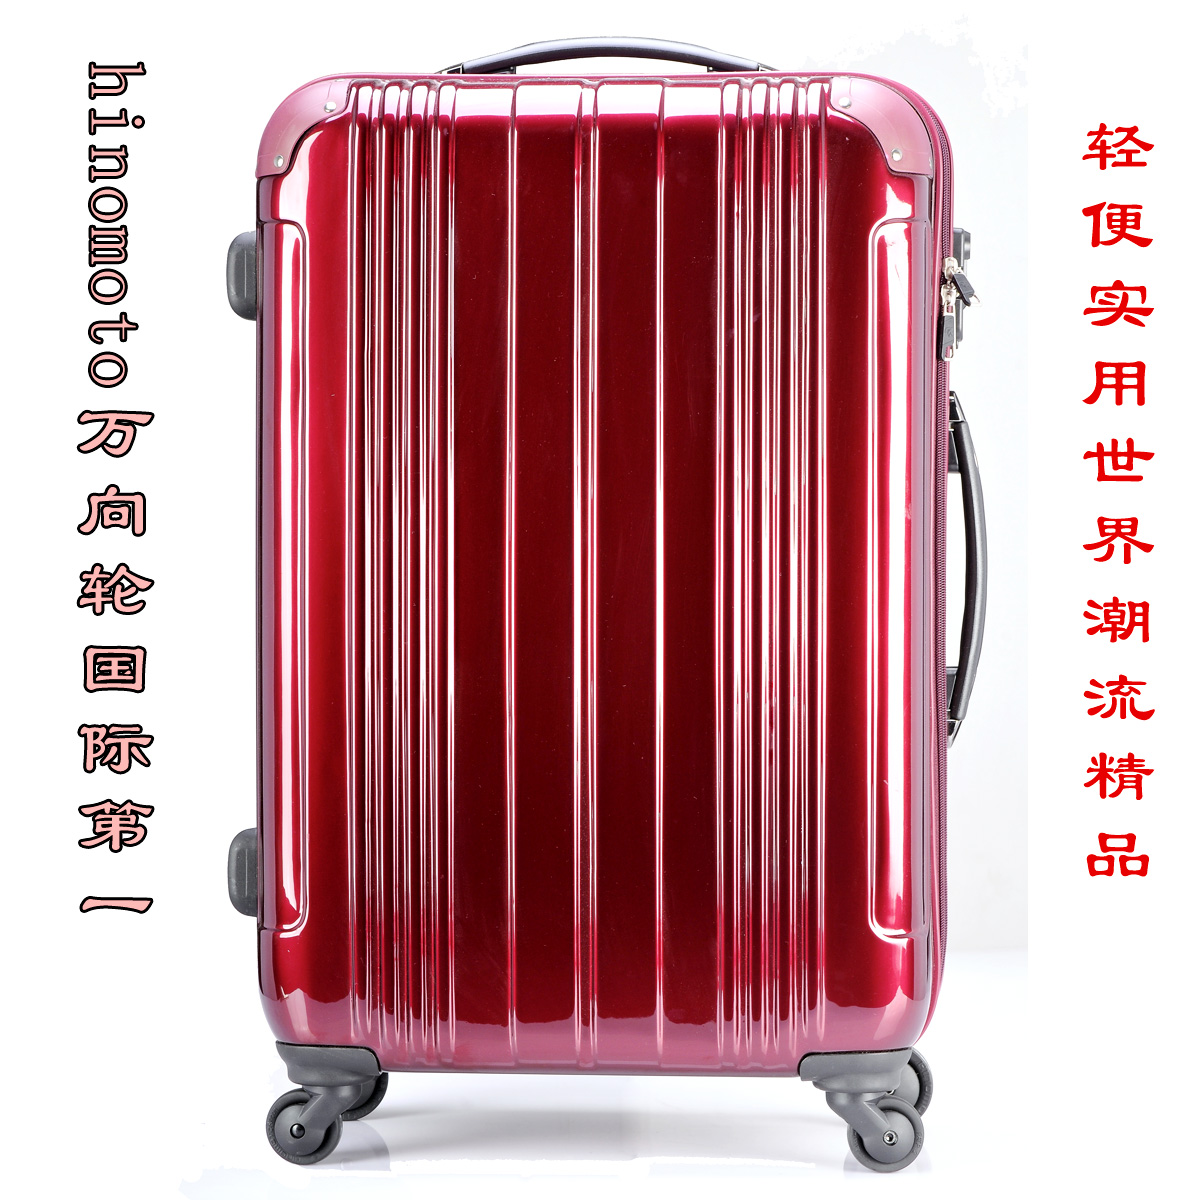 22寸tsa锁旅行箱国际最顶级日本hinomoto万向轮拉杆箱豪华行李箱